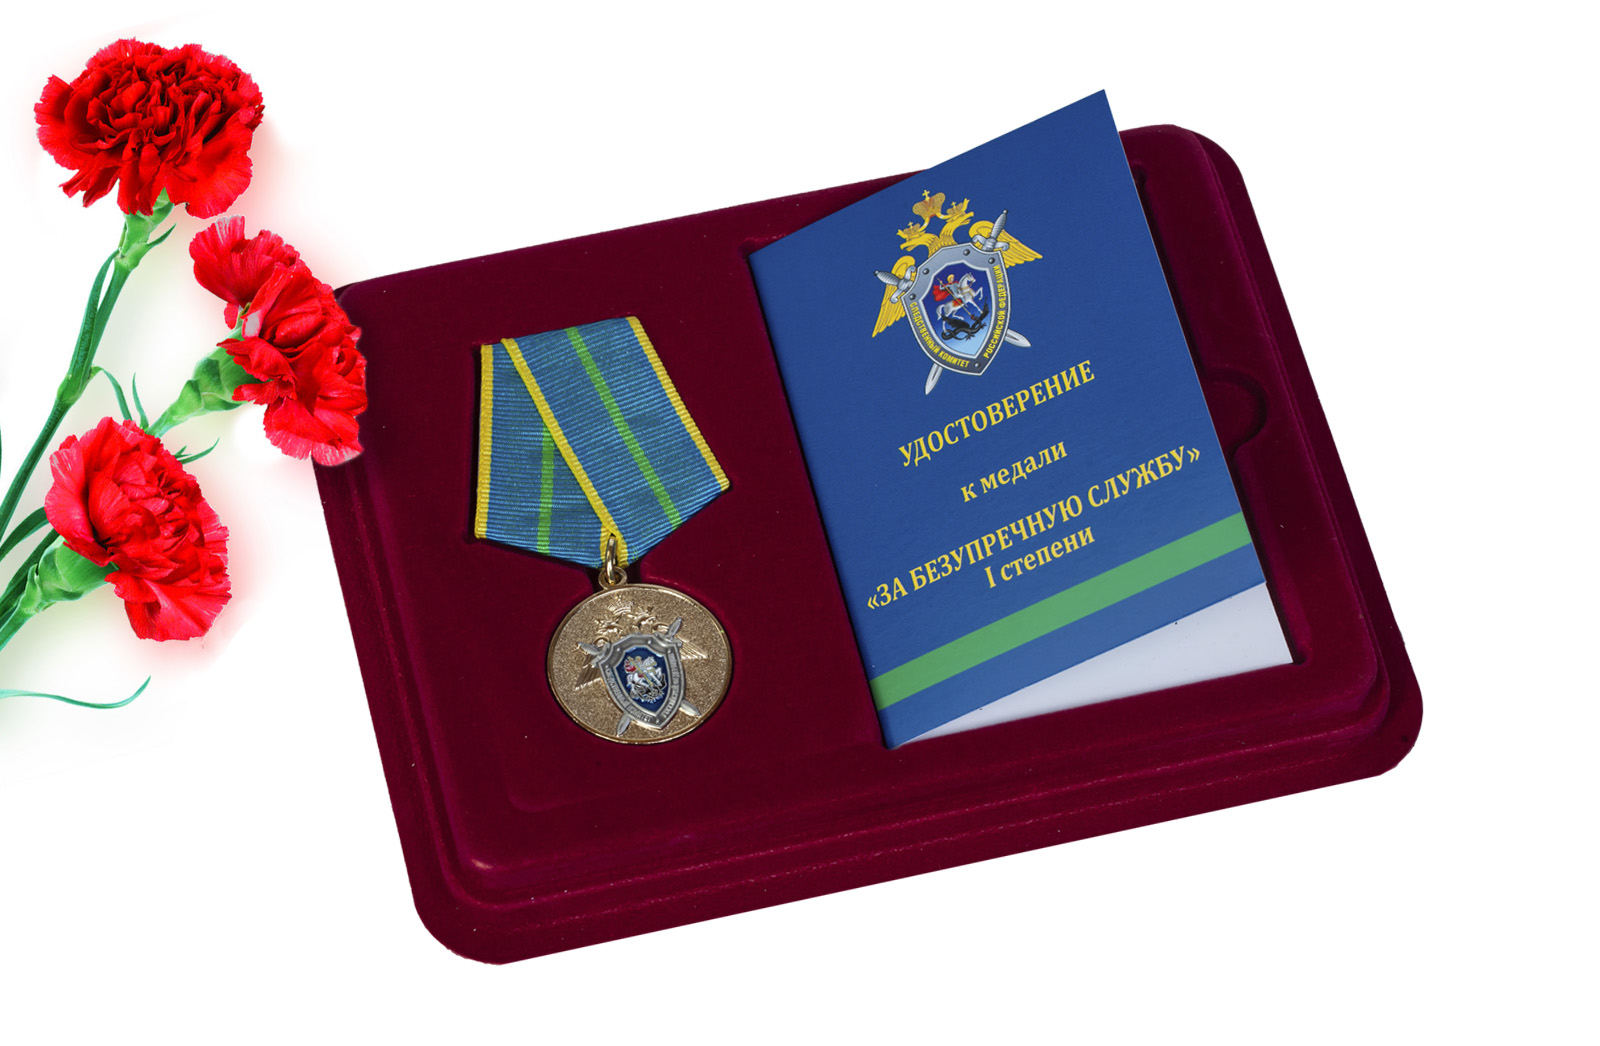 Купить медаль СК РФ За безупречную службу 1 степени онлайн выгодно